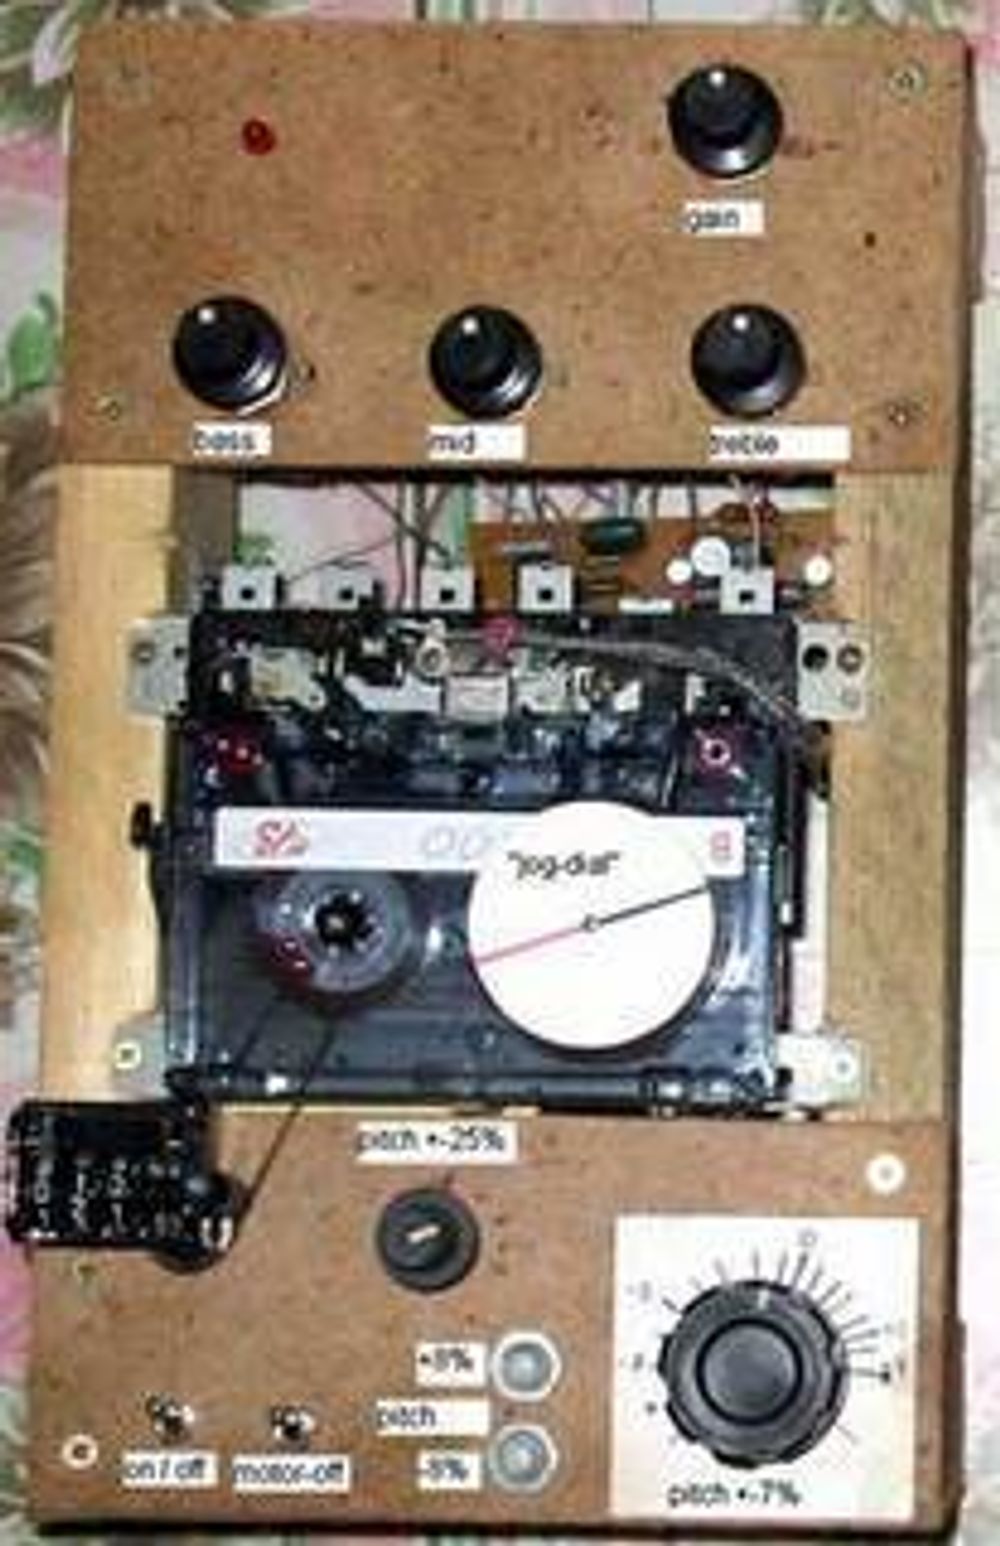 NOSTALGI: Mannen bak kassettmiksepulten får ære og berømmelse for sin nostalgiske oppfinnelse. Foto: http://soundresearch.narod.ru